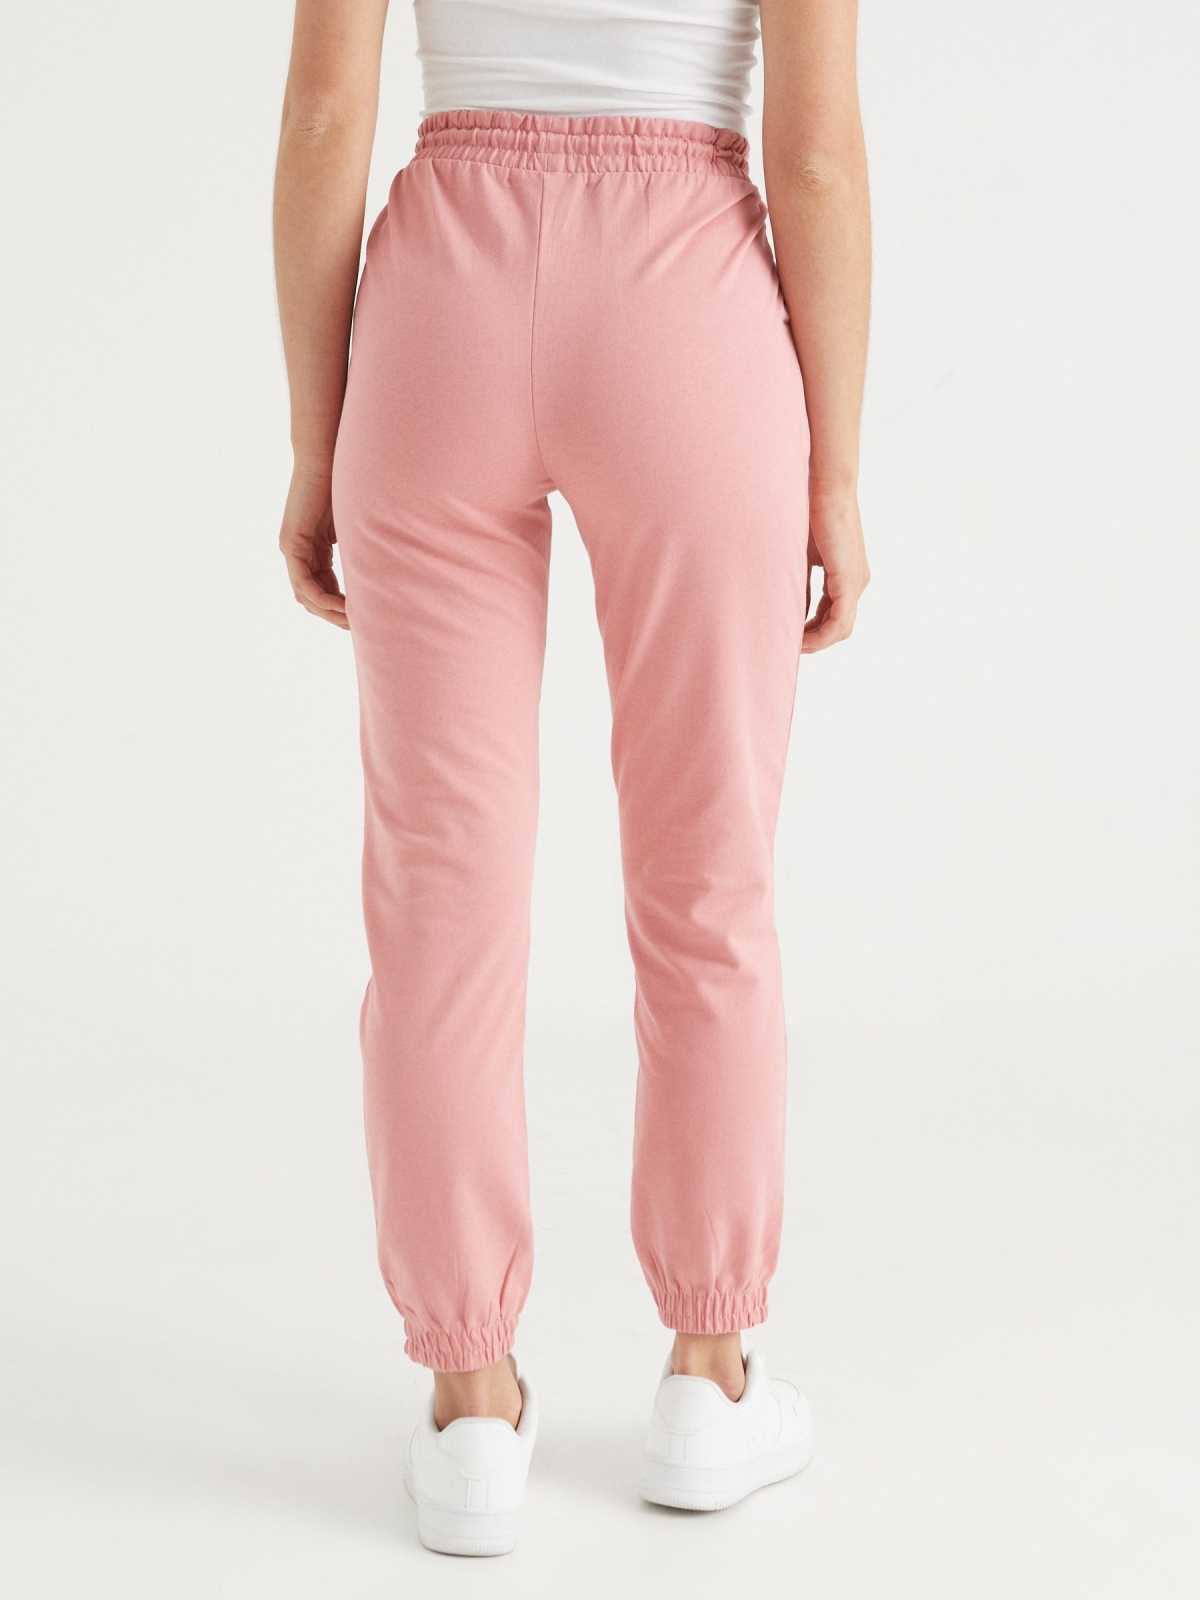 Pantalón jogger básico rosa claro vista media trasera